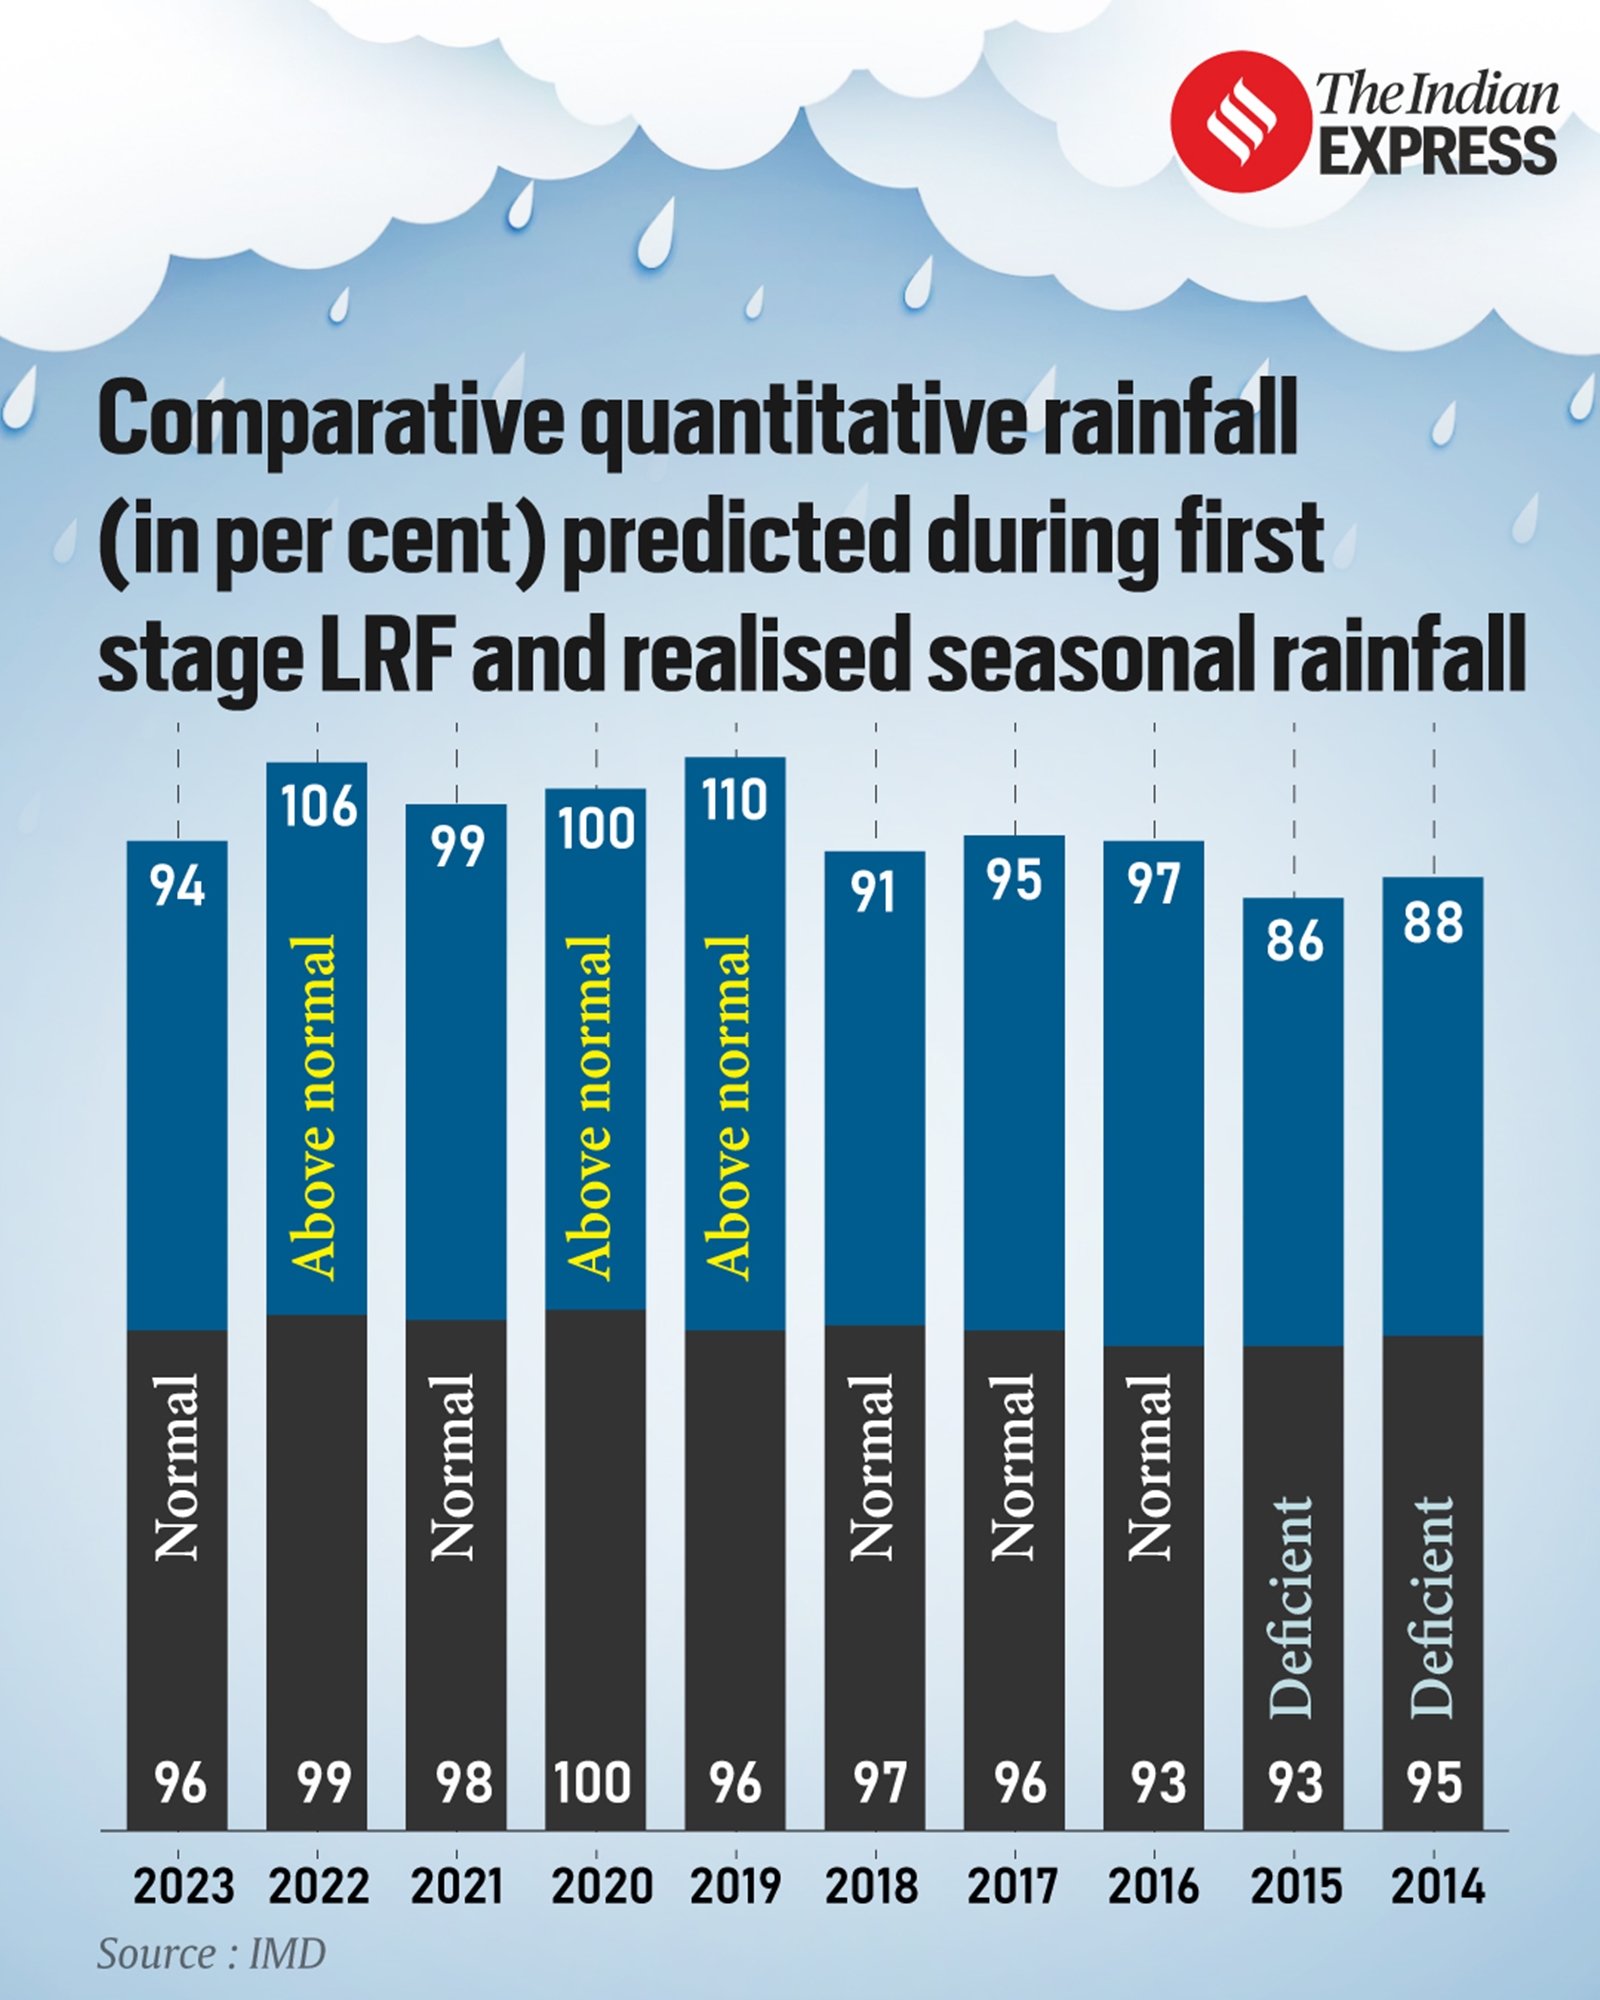 印度降雨量高于平均水平